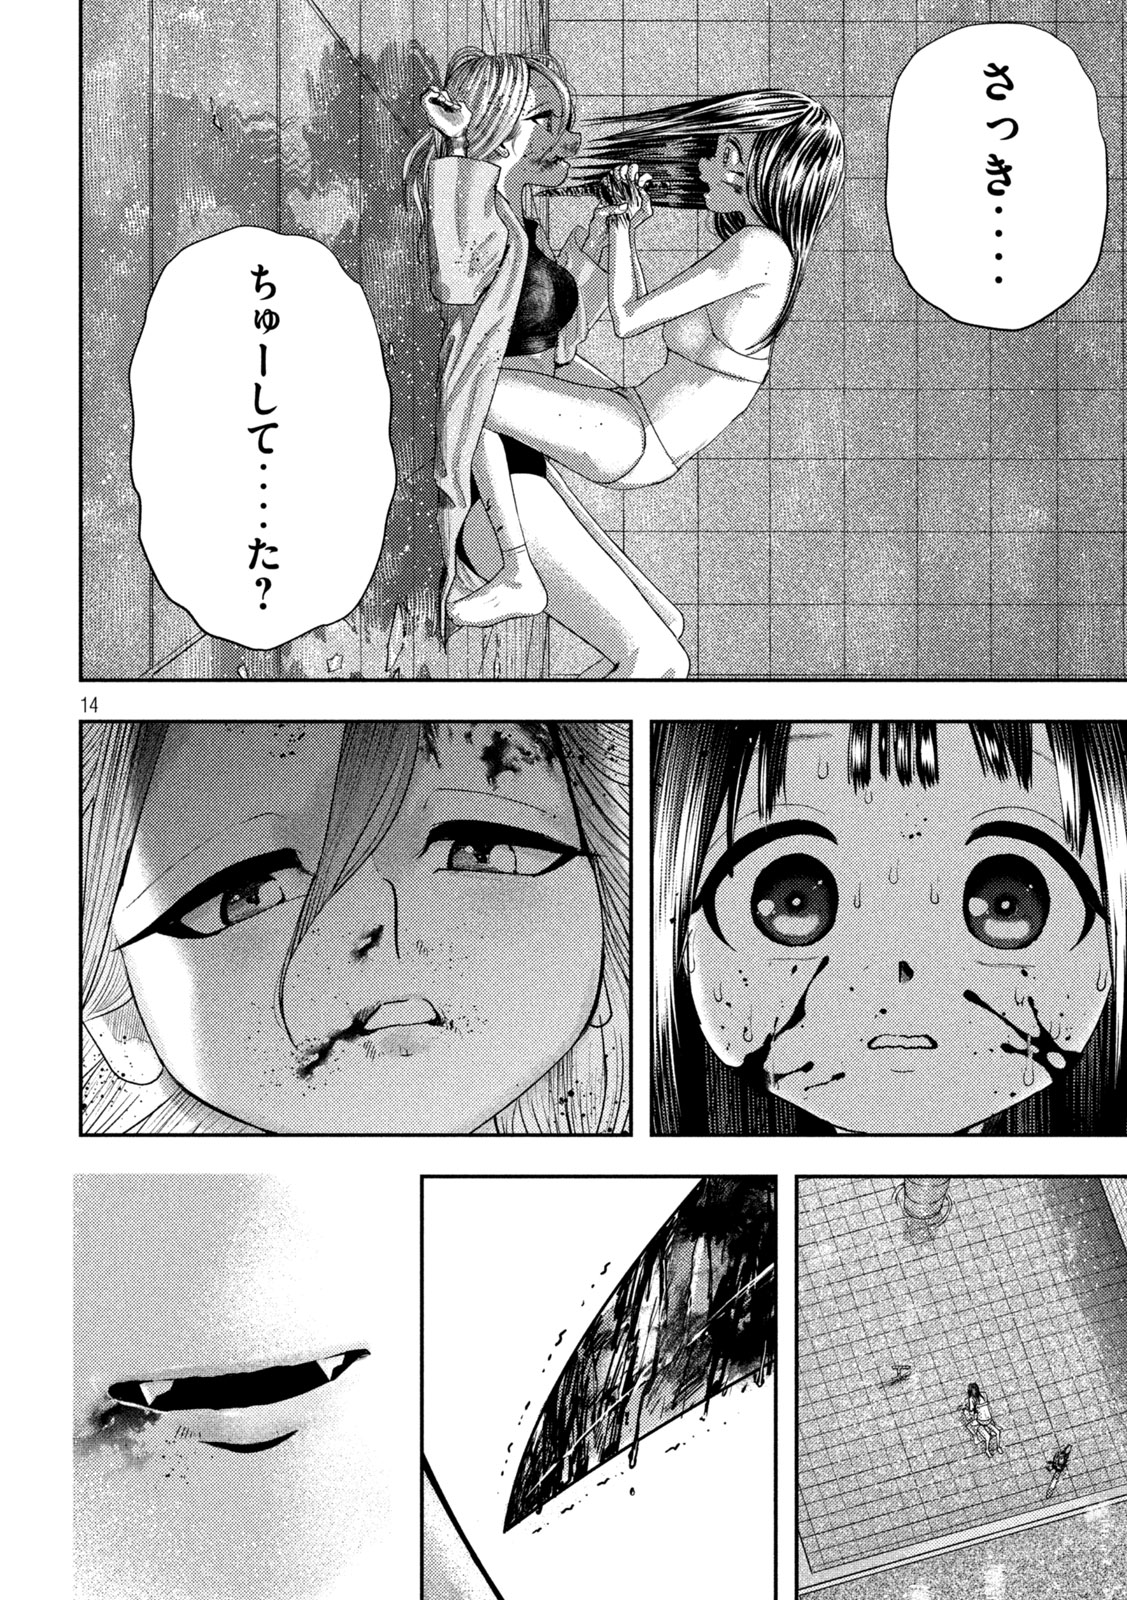 Nezumi no Koi - Chapter 23 - Page 14